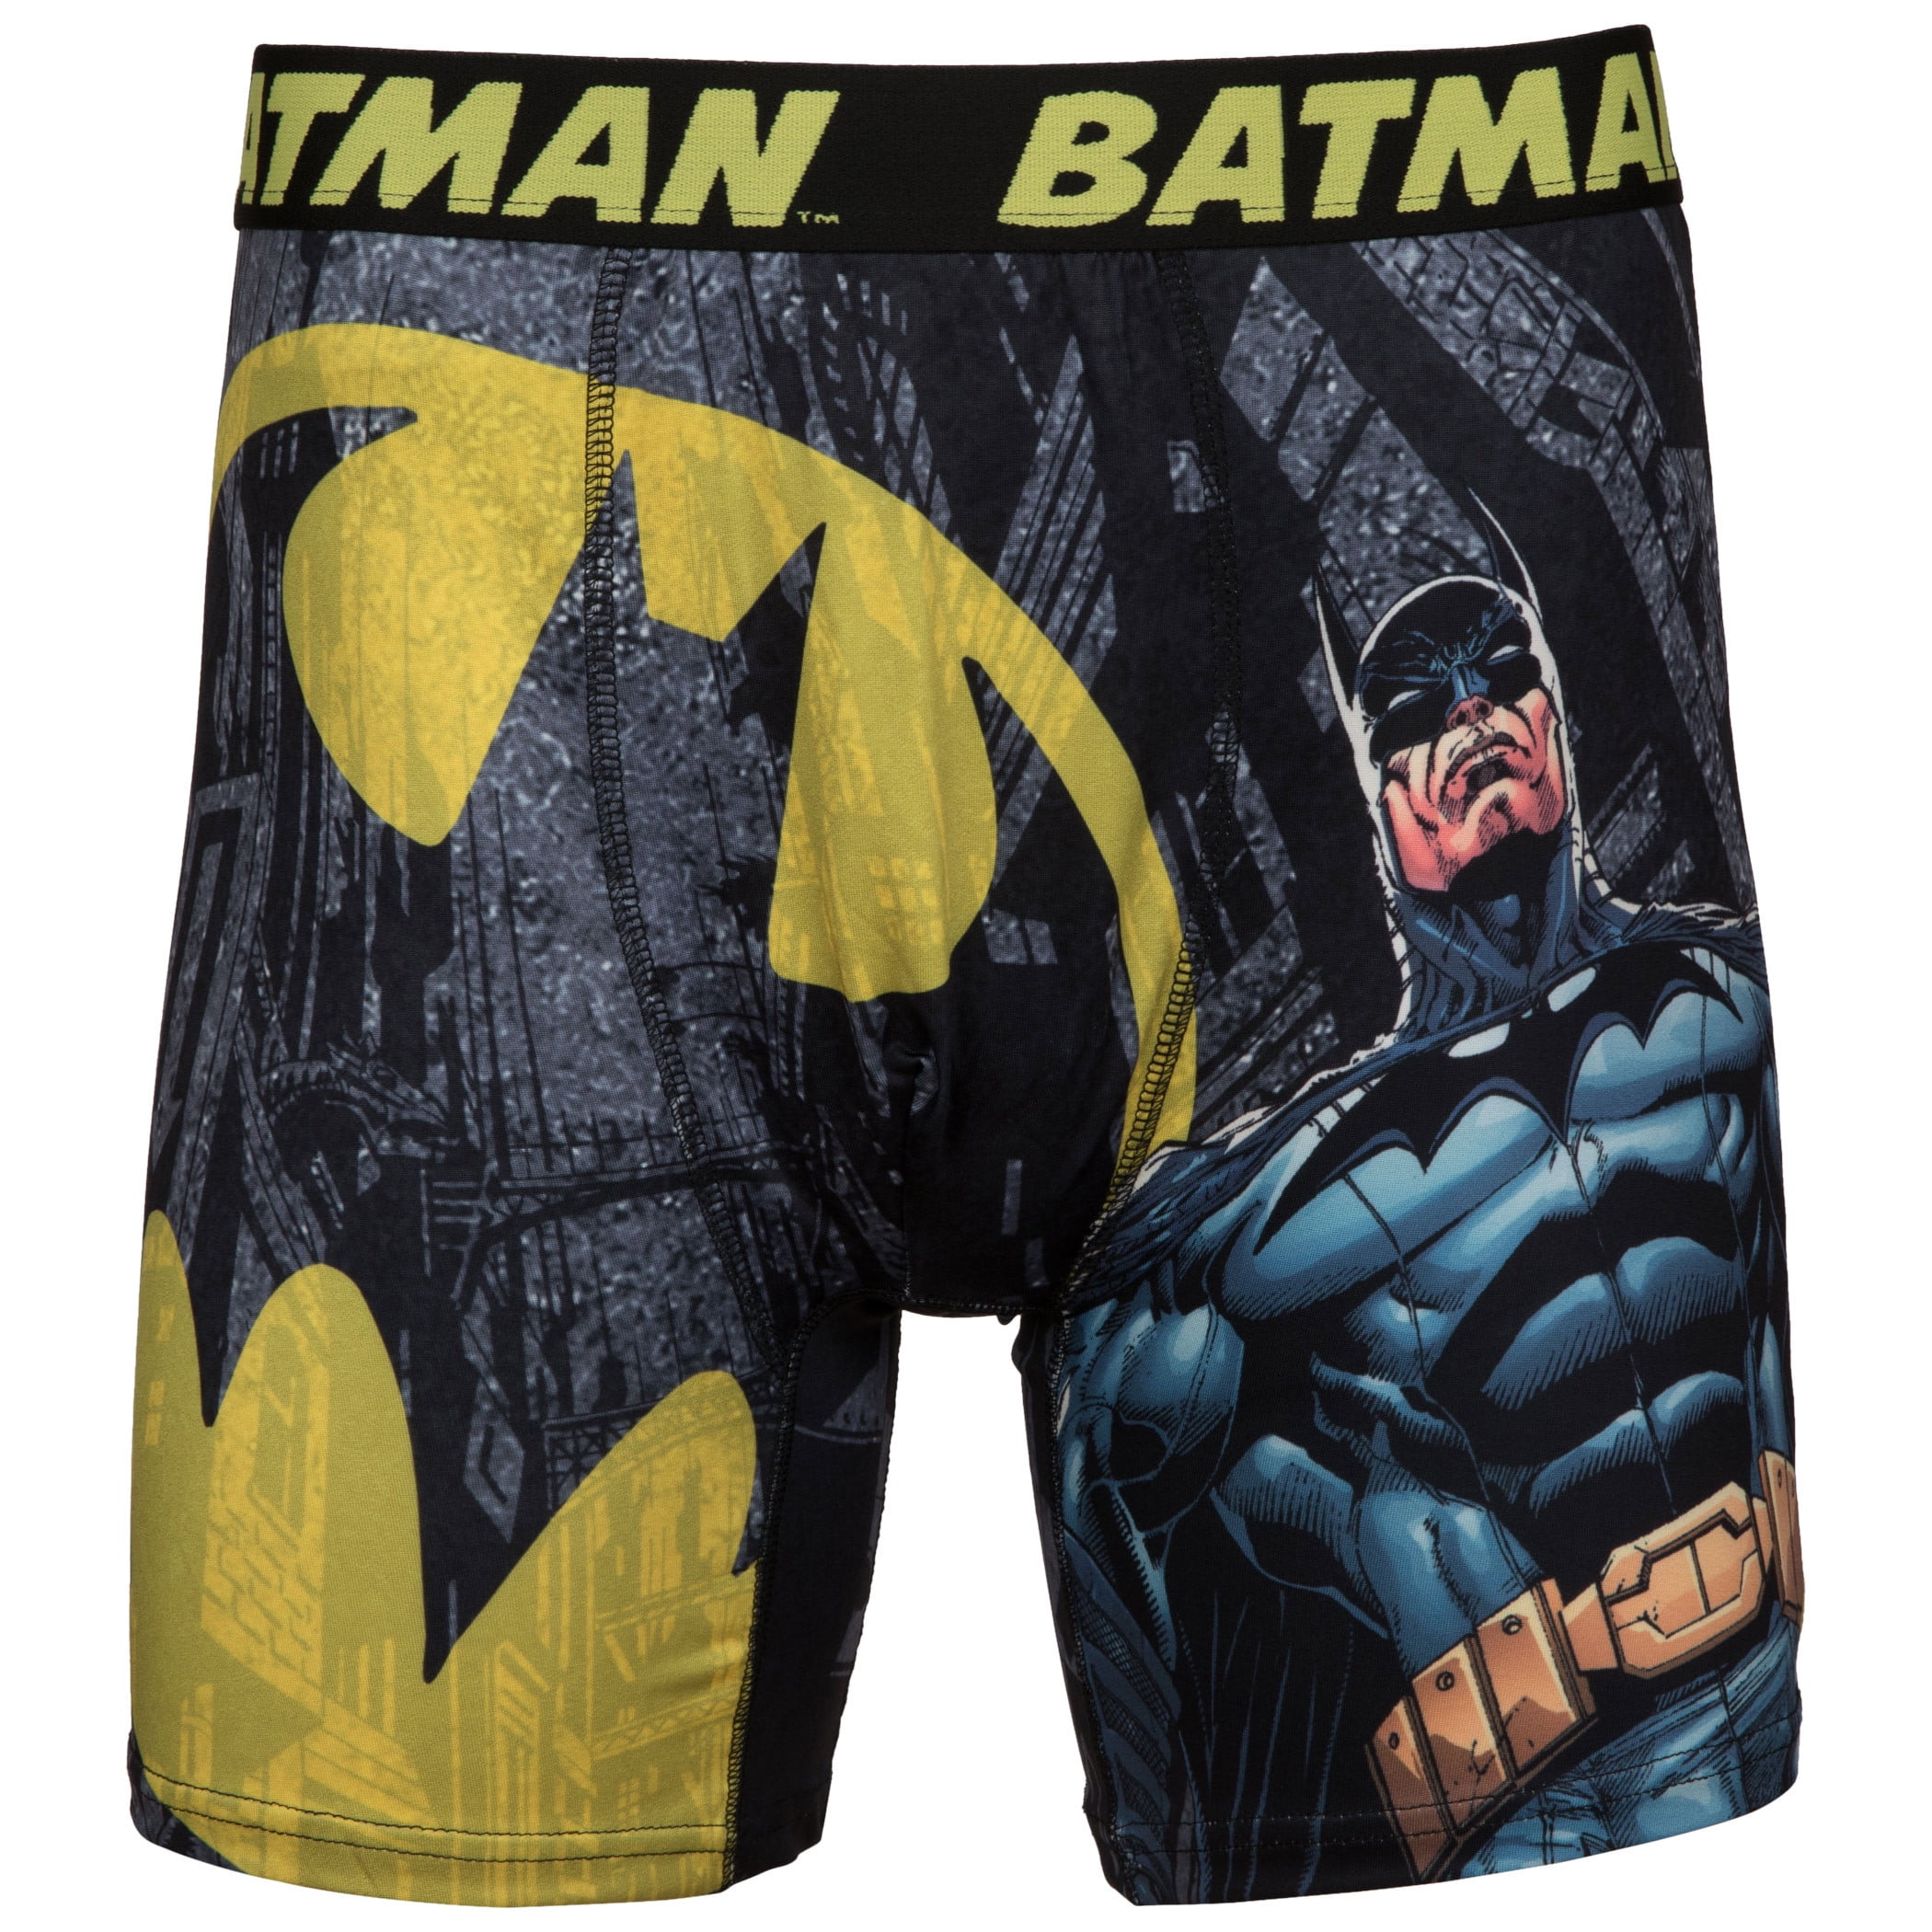 Super Heroes Men Underwear Super Man Cotton Briefs Man Boxer Panties  Lingerie